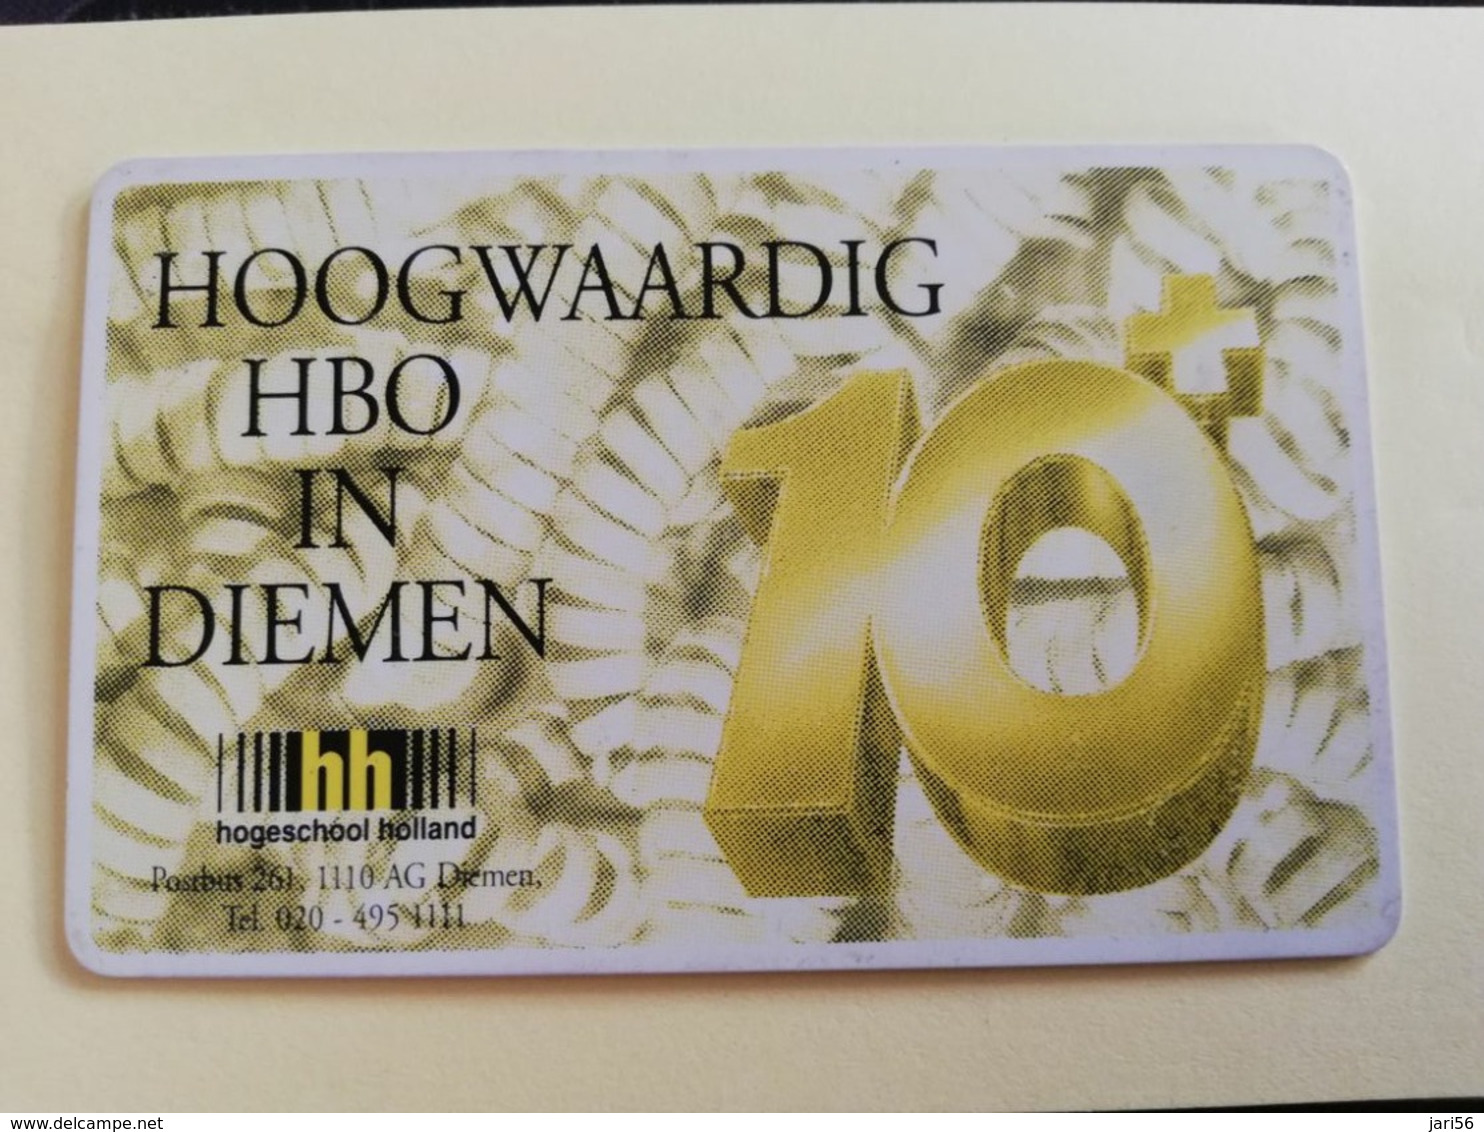 NETHERLANDS  ADVERTISING CHIPCARD HFL 5,00 CRE 131.02   HOOGWAARDIG HBO DIEMEN          Fine Used   ** 3188** - Private